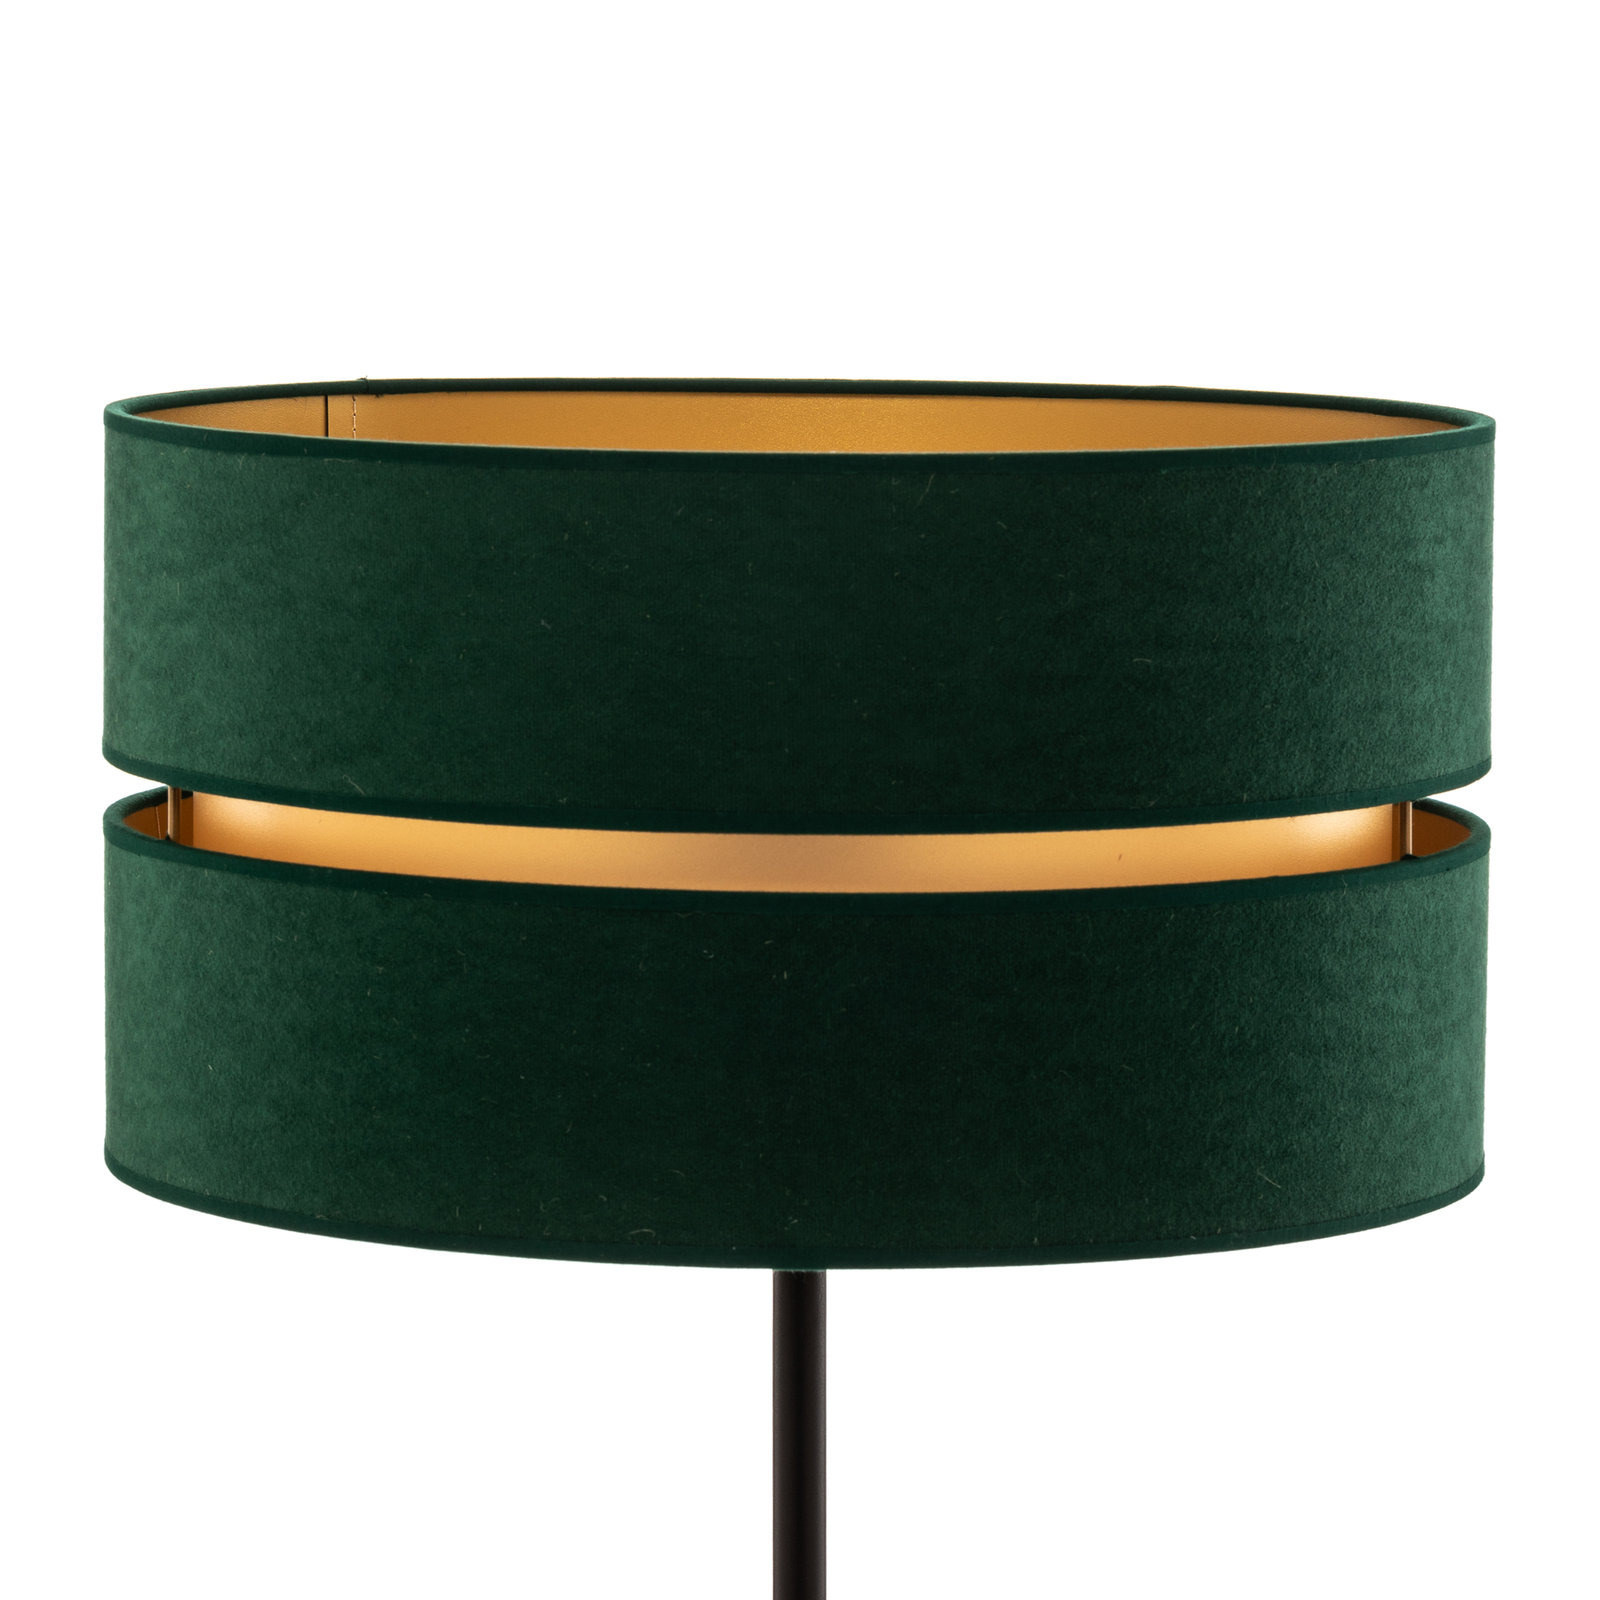 Vloerlamp Duo, groen/goud, Ø 40 cm 1-lamp